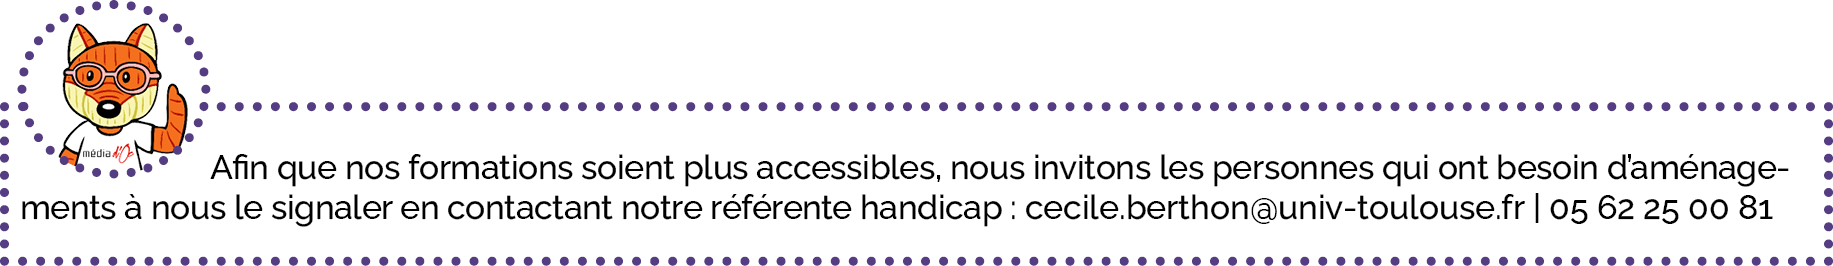 Afin que nos formations soient plus accessibles, nous invitons les personnes qui ont besoin d'aménagements à nous le signaler en contactant notre référente handicap : cecile.berthon@univ-toulouse.fr | 05 62 25 00 81